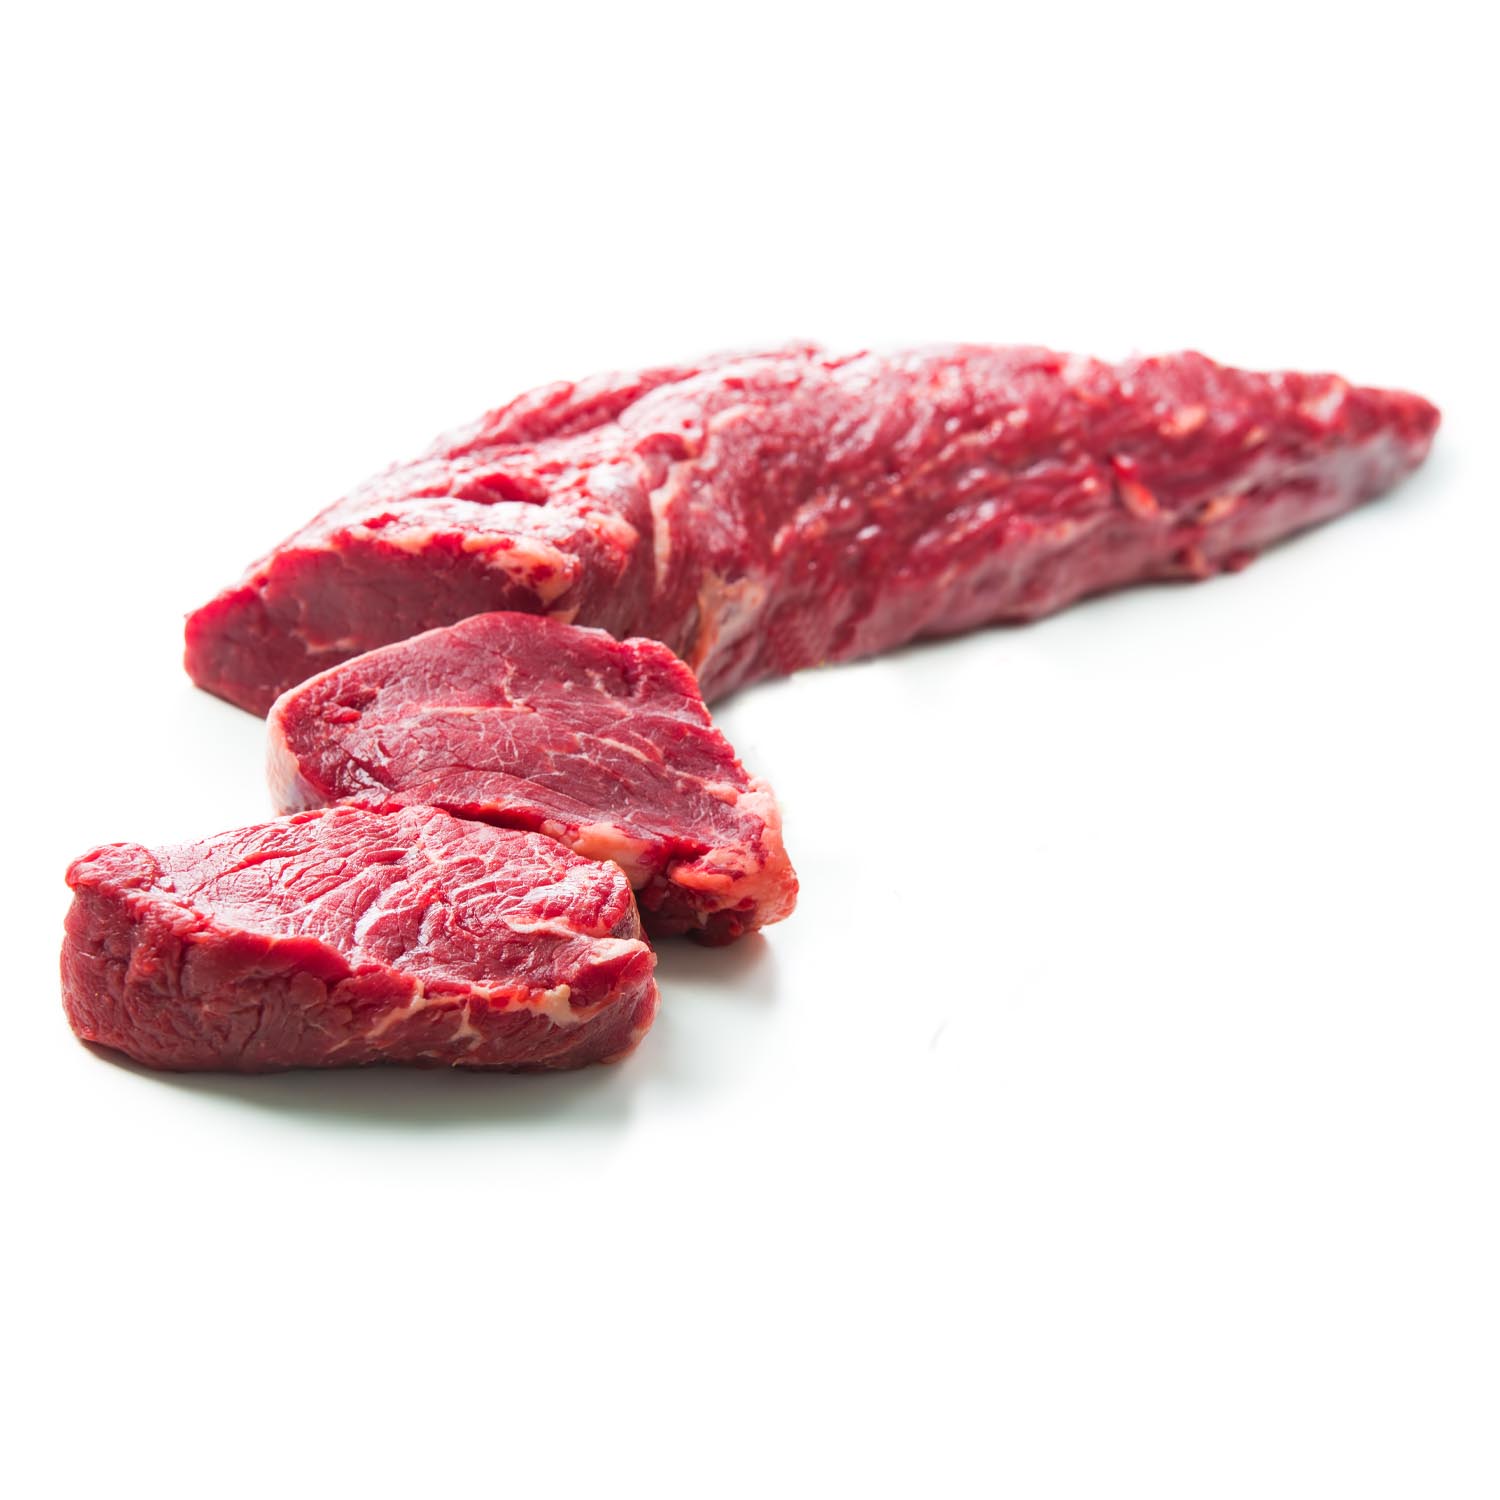 Ungraded Stripped Tenderloin Beef - Beef